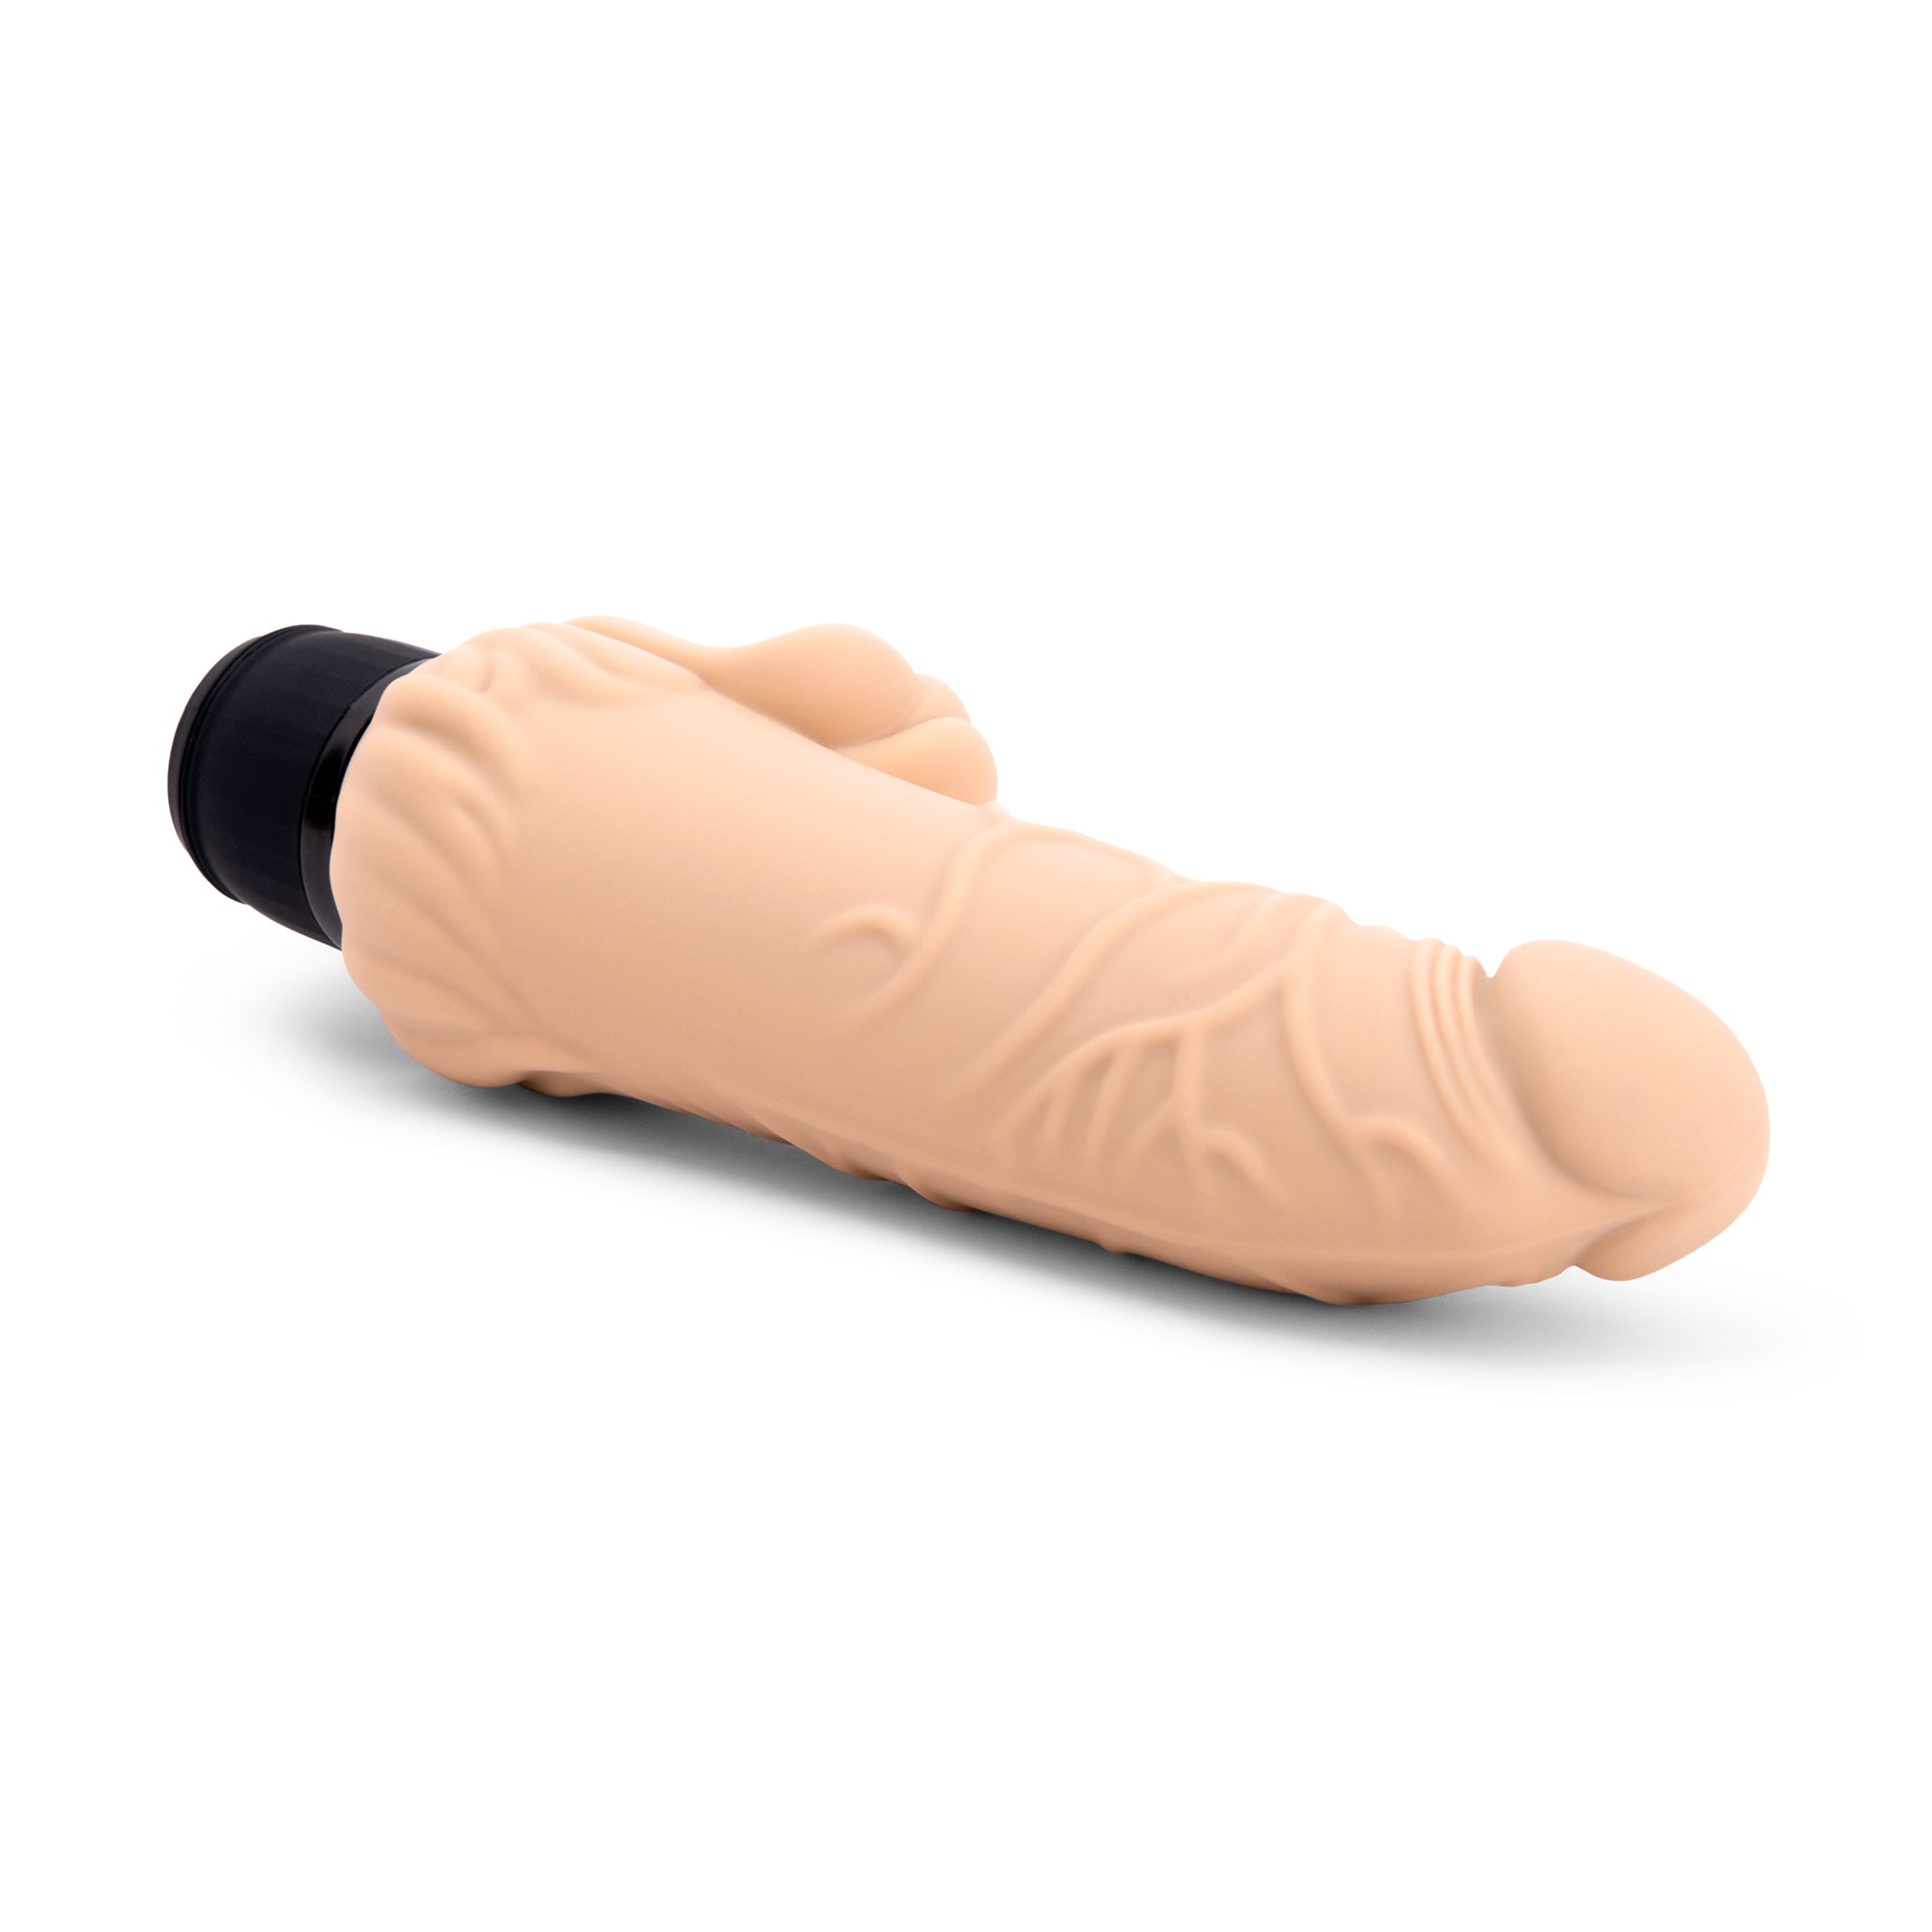 7" Realistic Vibrator with Clitoral Stimulator Nude